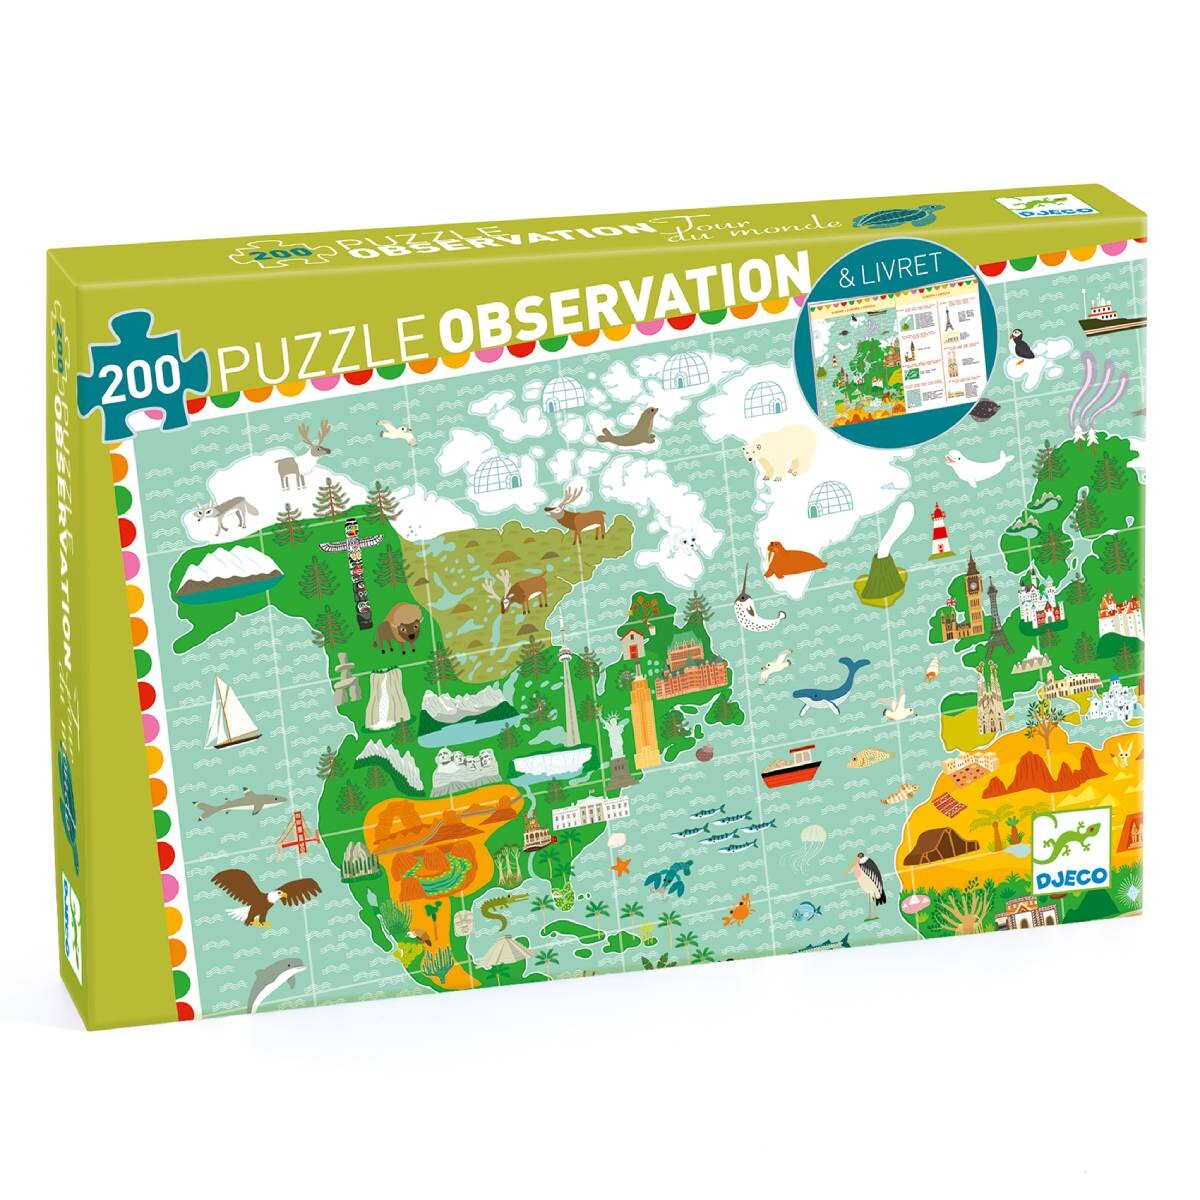 Puzzle Observación 200 pzas Djeco Alrededor del Mundo + Librito 